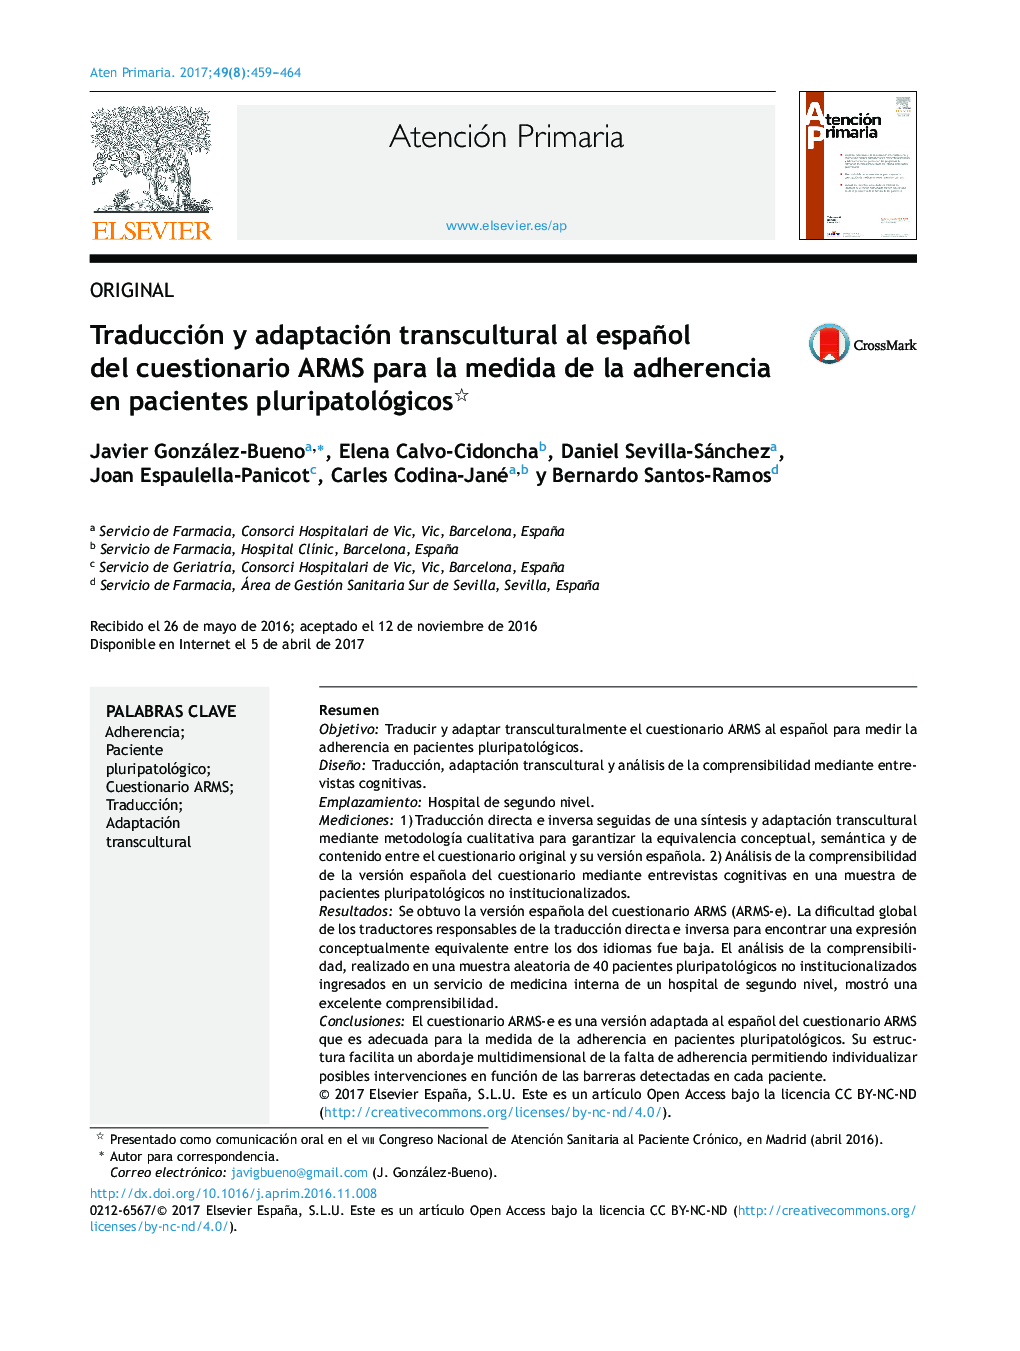 Traducción y adaptación transcultural al español del cuestionario ARMS para la medida de la adherencia en pacientes pluripatológicos